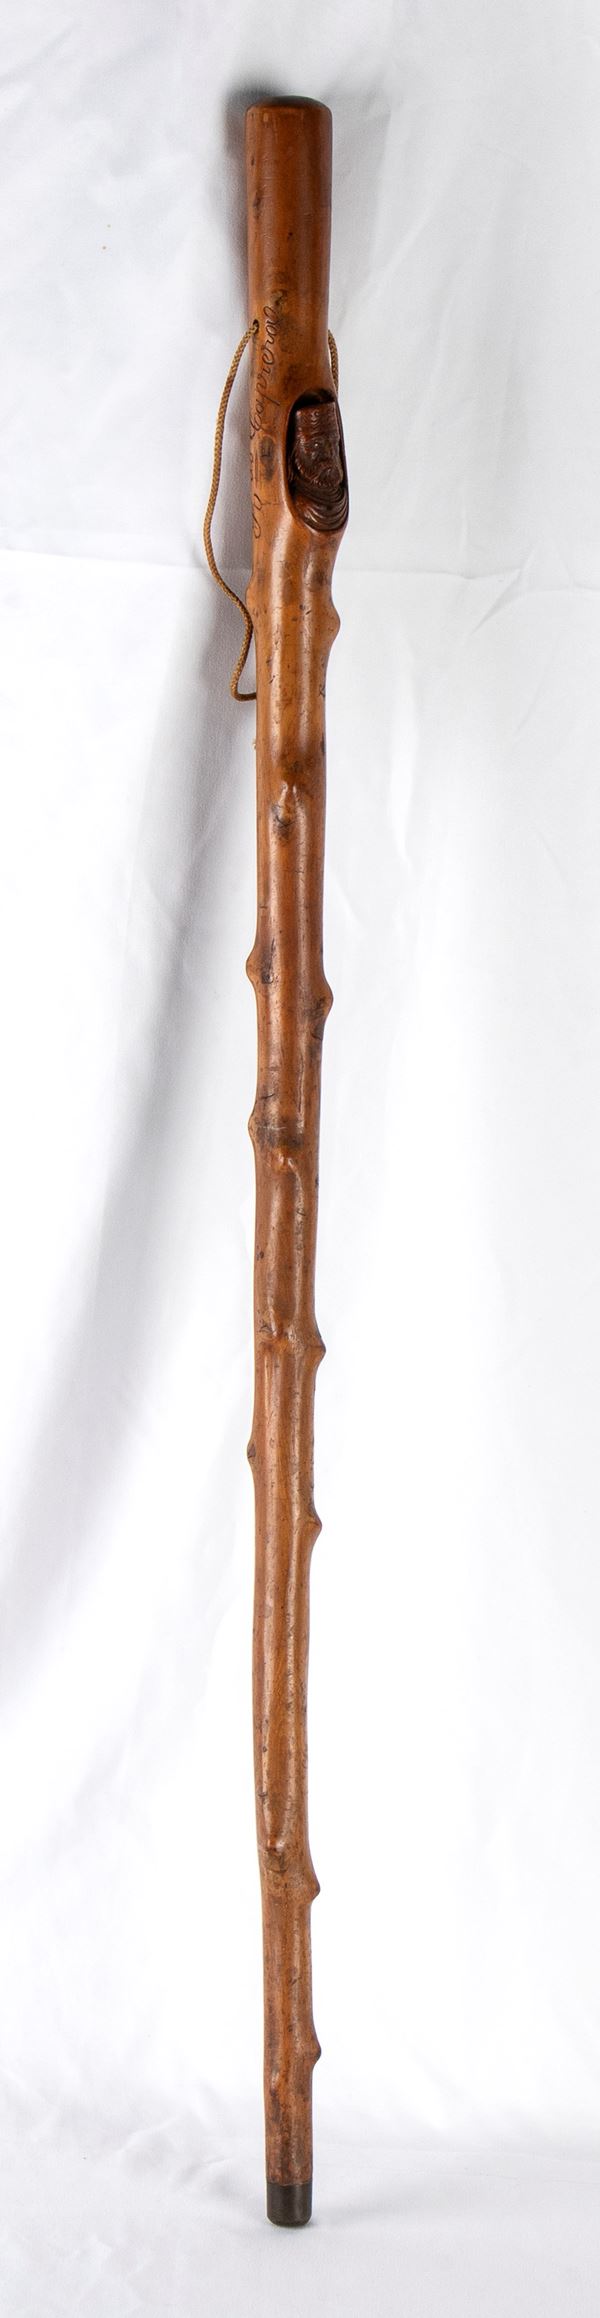 Garibaldi, Giuseppe Maria  (Nizza, 4 luglio 1807 &#8211; Caprera, 2 giugno 1882) : Walking Stick...  (Historical memorabilia...)  - Auction Memorabilia. History & Movie - Bertolami Fine Art - Casa d'Aste